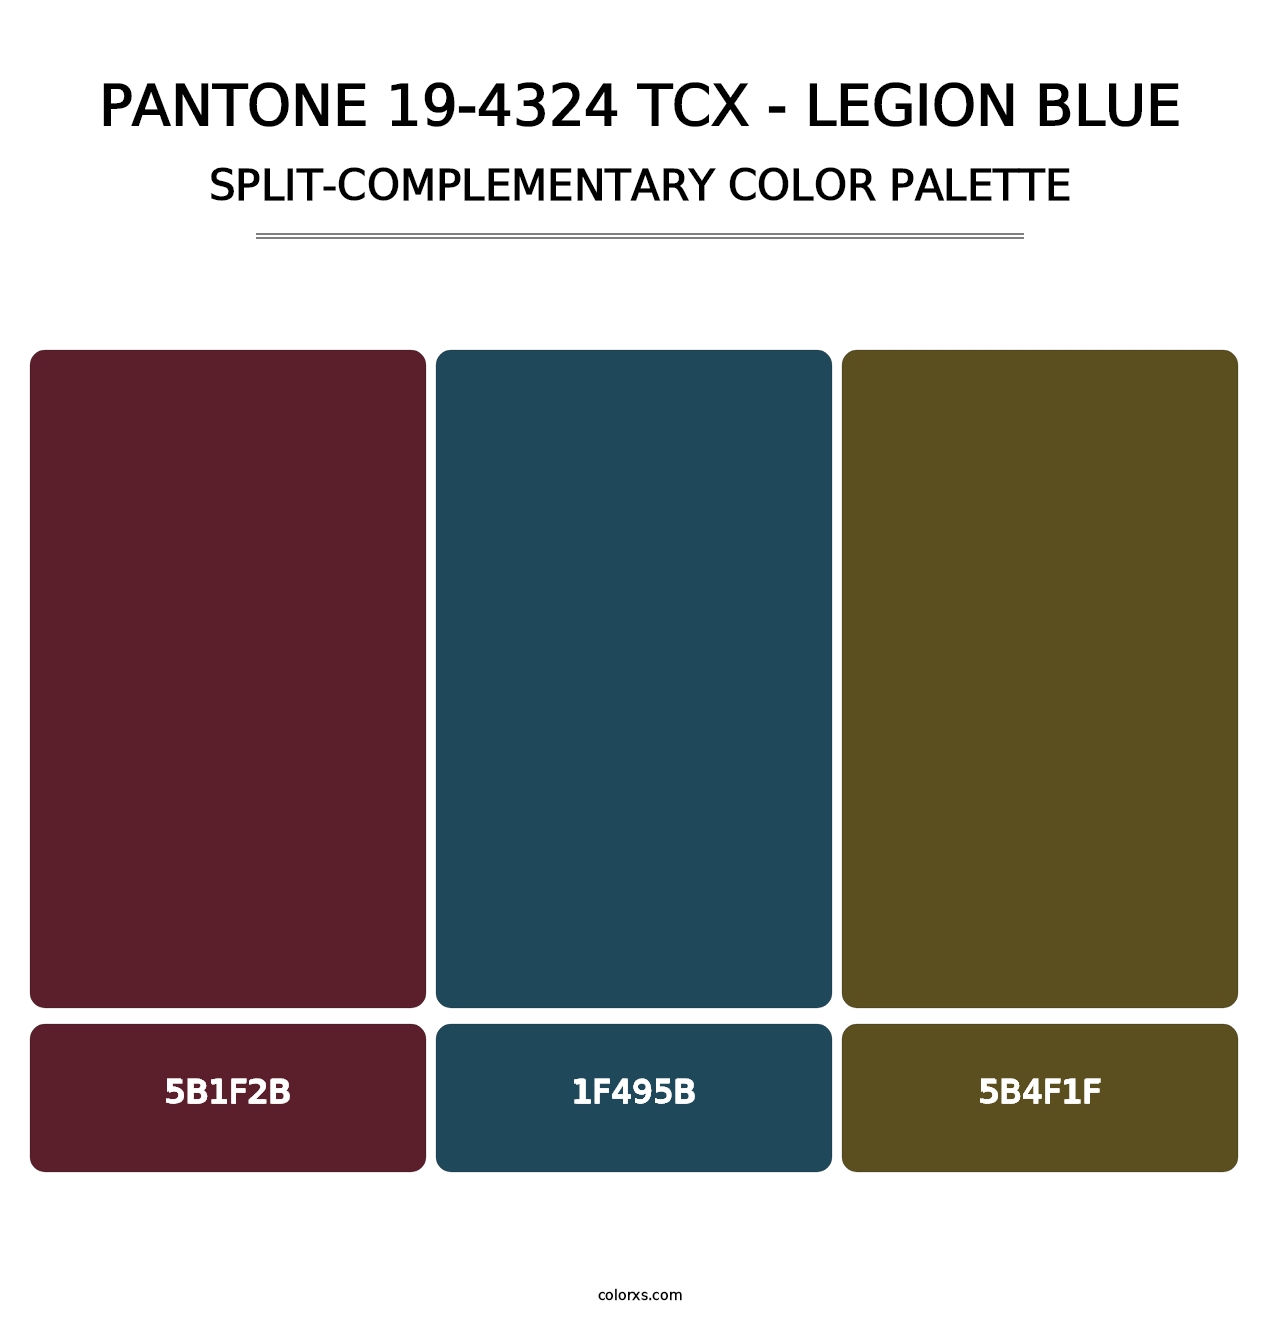 PANTONE 19-4324 TCX - Legion Blue - Split-Complementary Color Palette